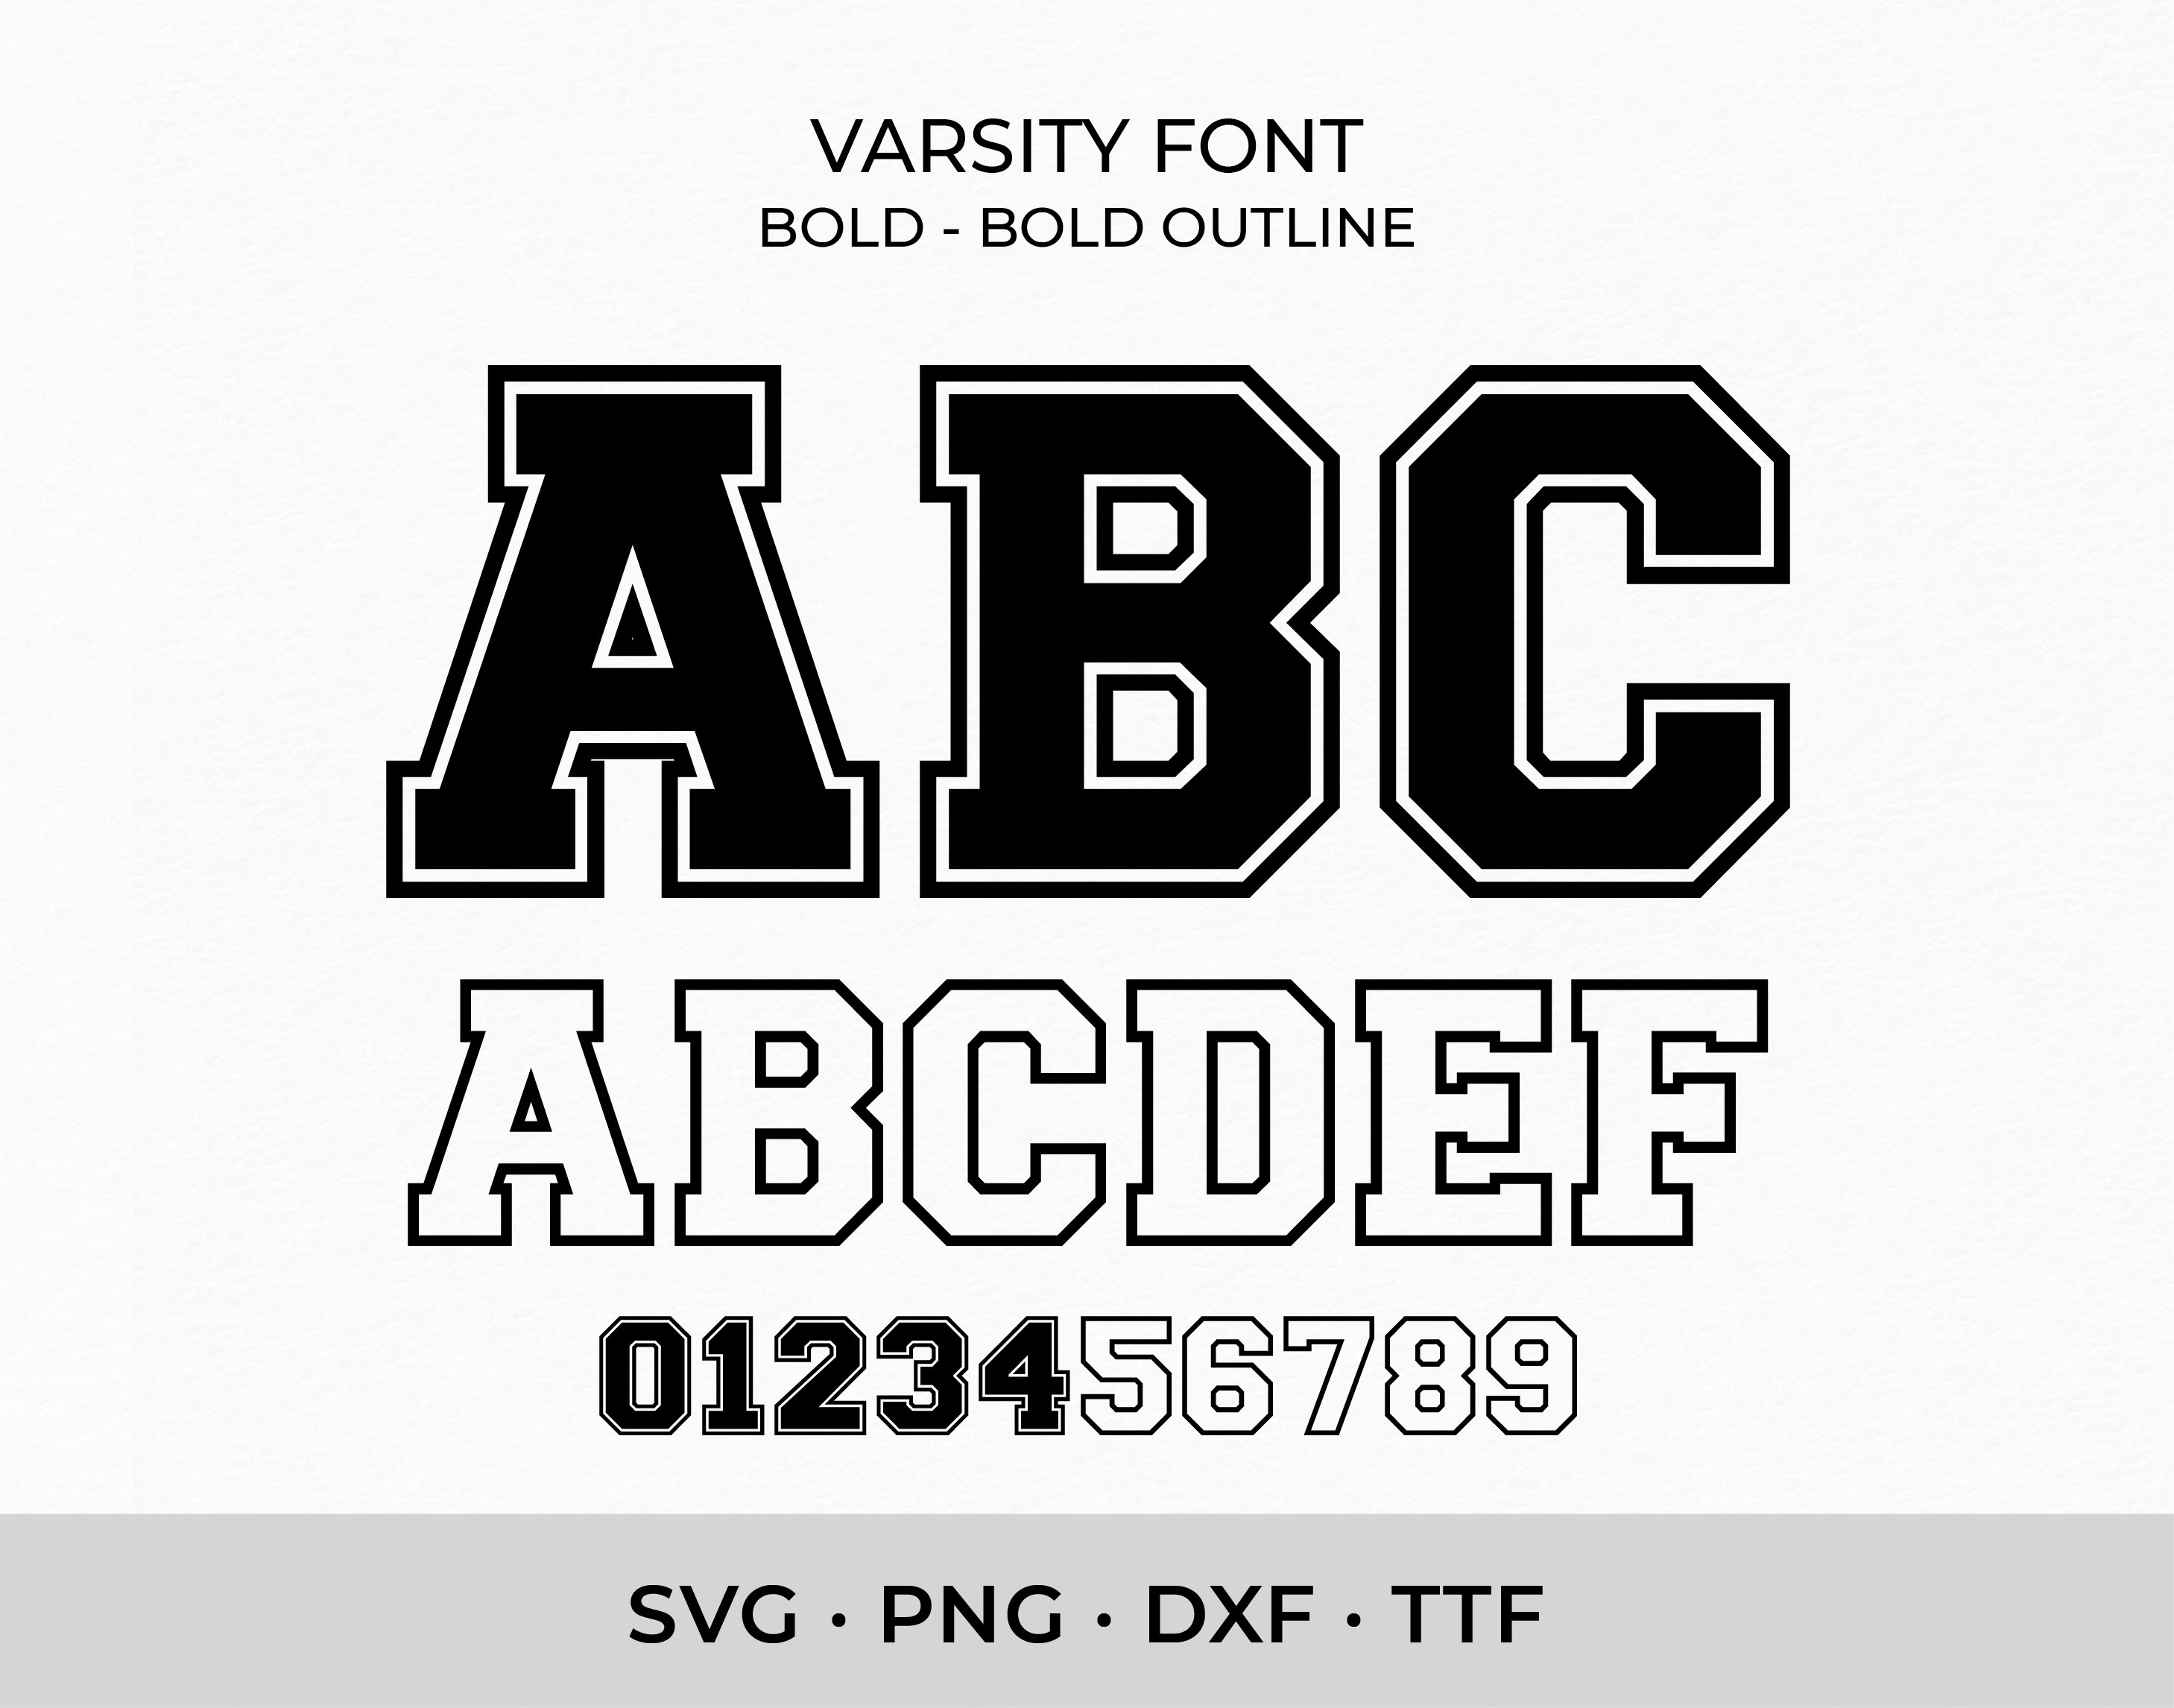 Varsity Font SVG TTF Bold College Font Svg Sports Font Svg - Etsy